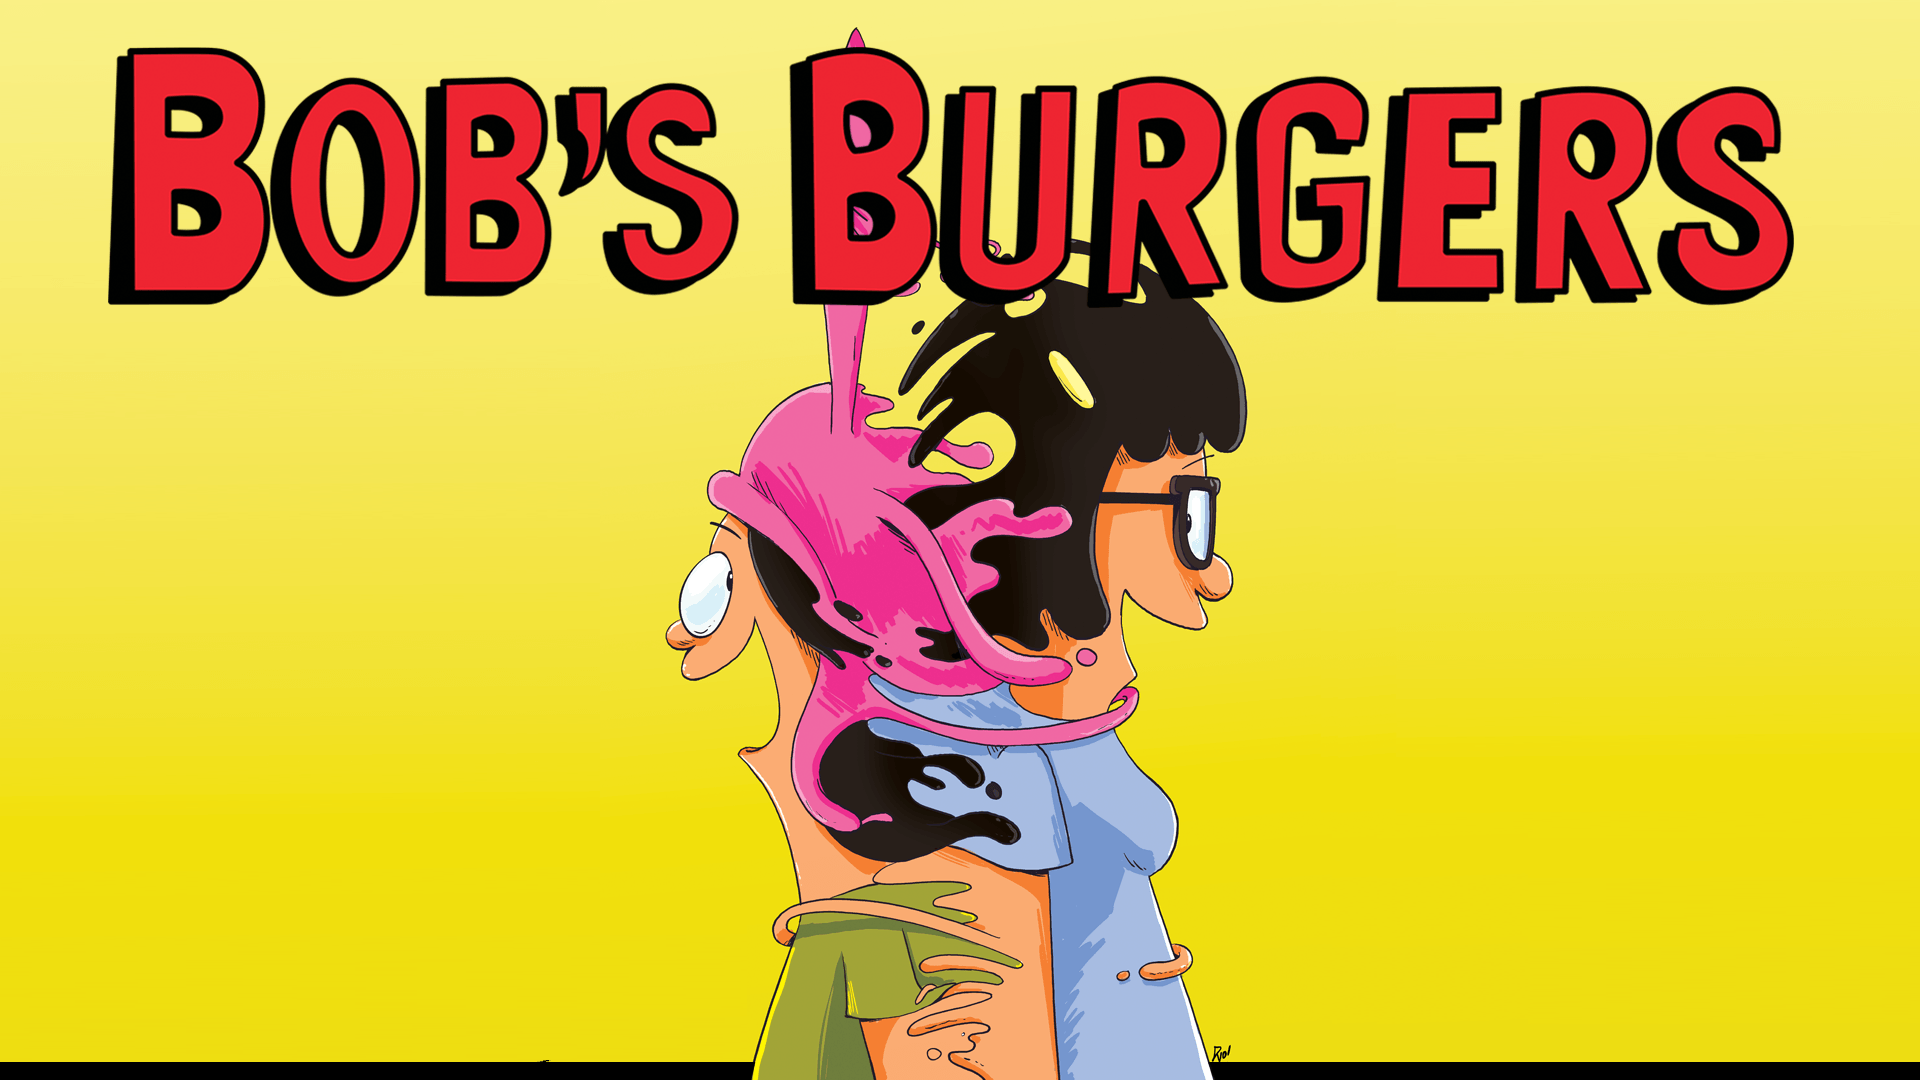 Bobs Burgers wallpaper by iJLucas  Download on ZEDGE  da06